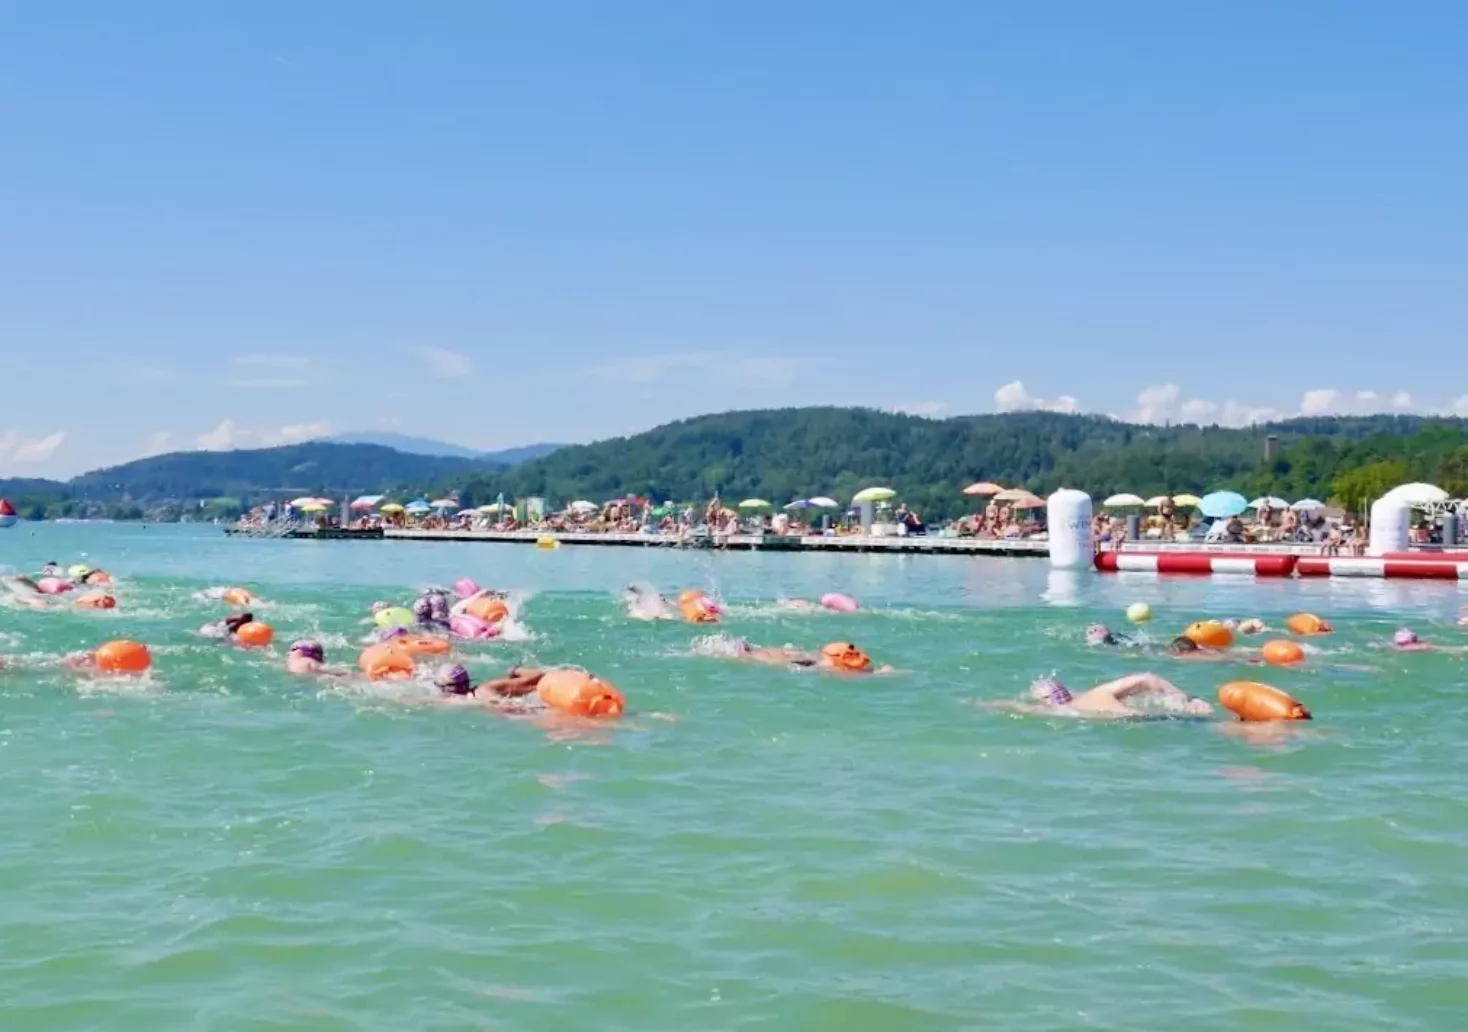 Badesaison eröffnet: Athleten bereiten sich auf Schwimm-Wettkampf vor